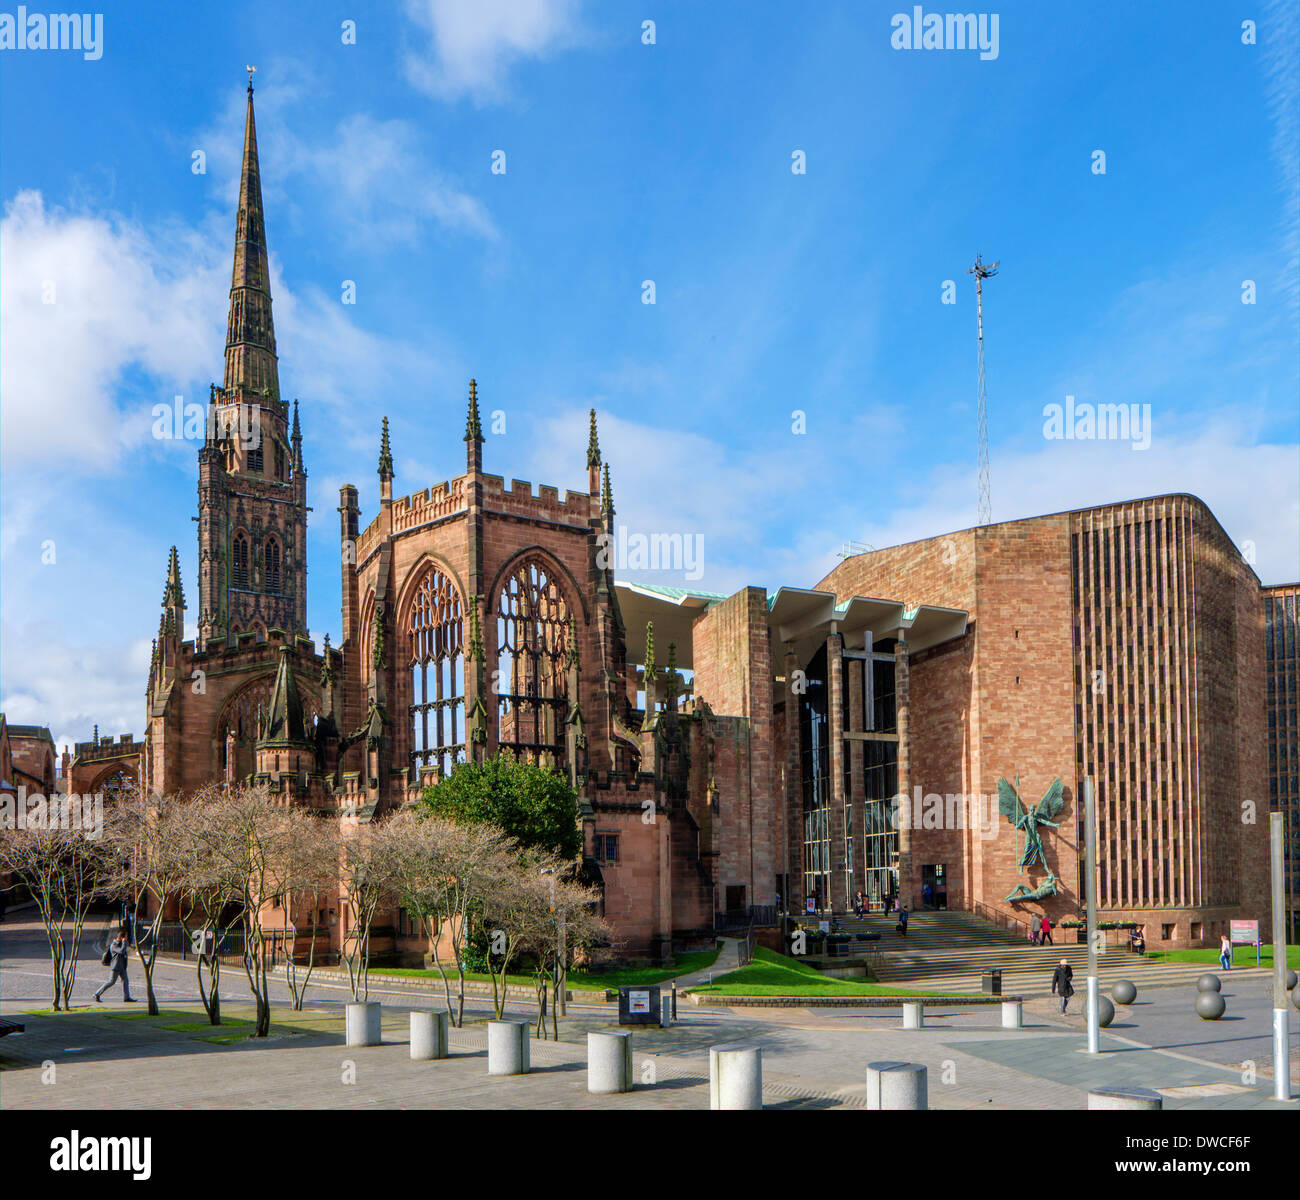 La cathédrale de Coventry ( St Michael's Cathedral ) bâtiments anciens et nouveaux, Coventry, West Midlands, England, UK Banque D'Images